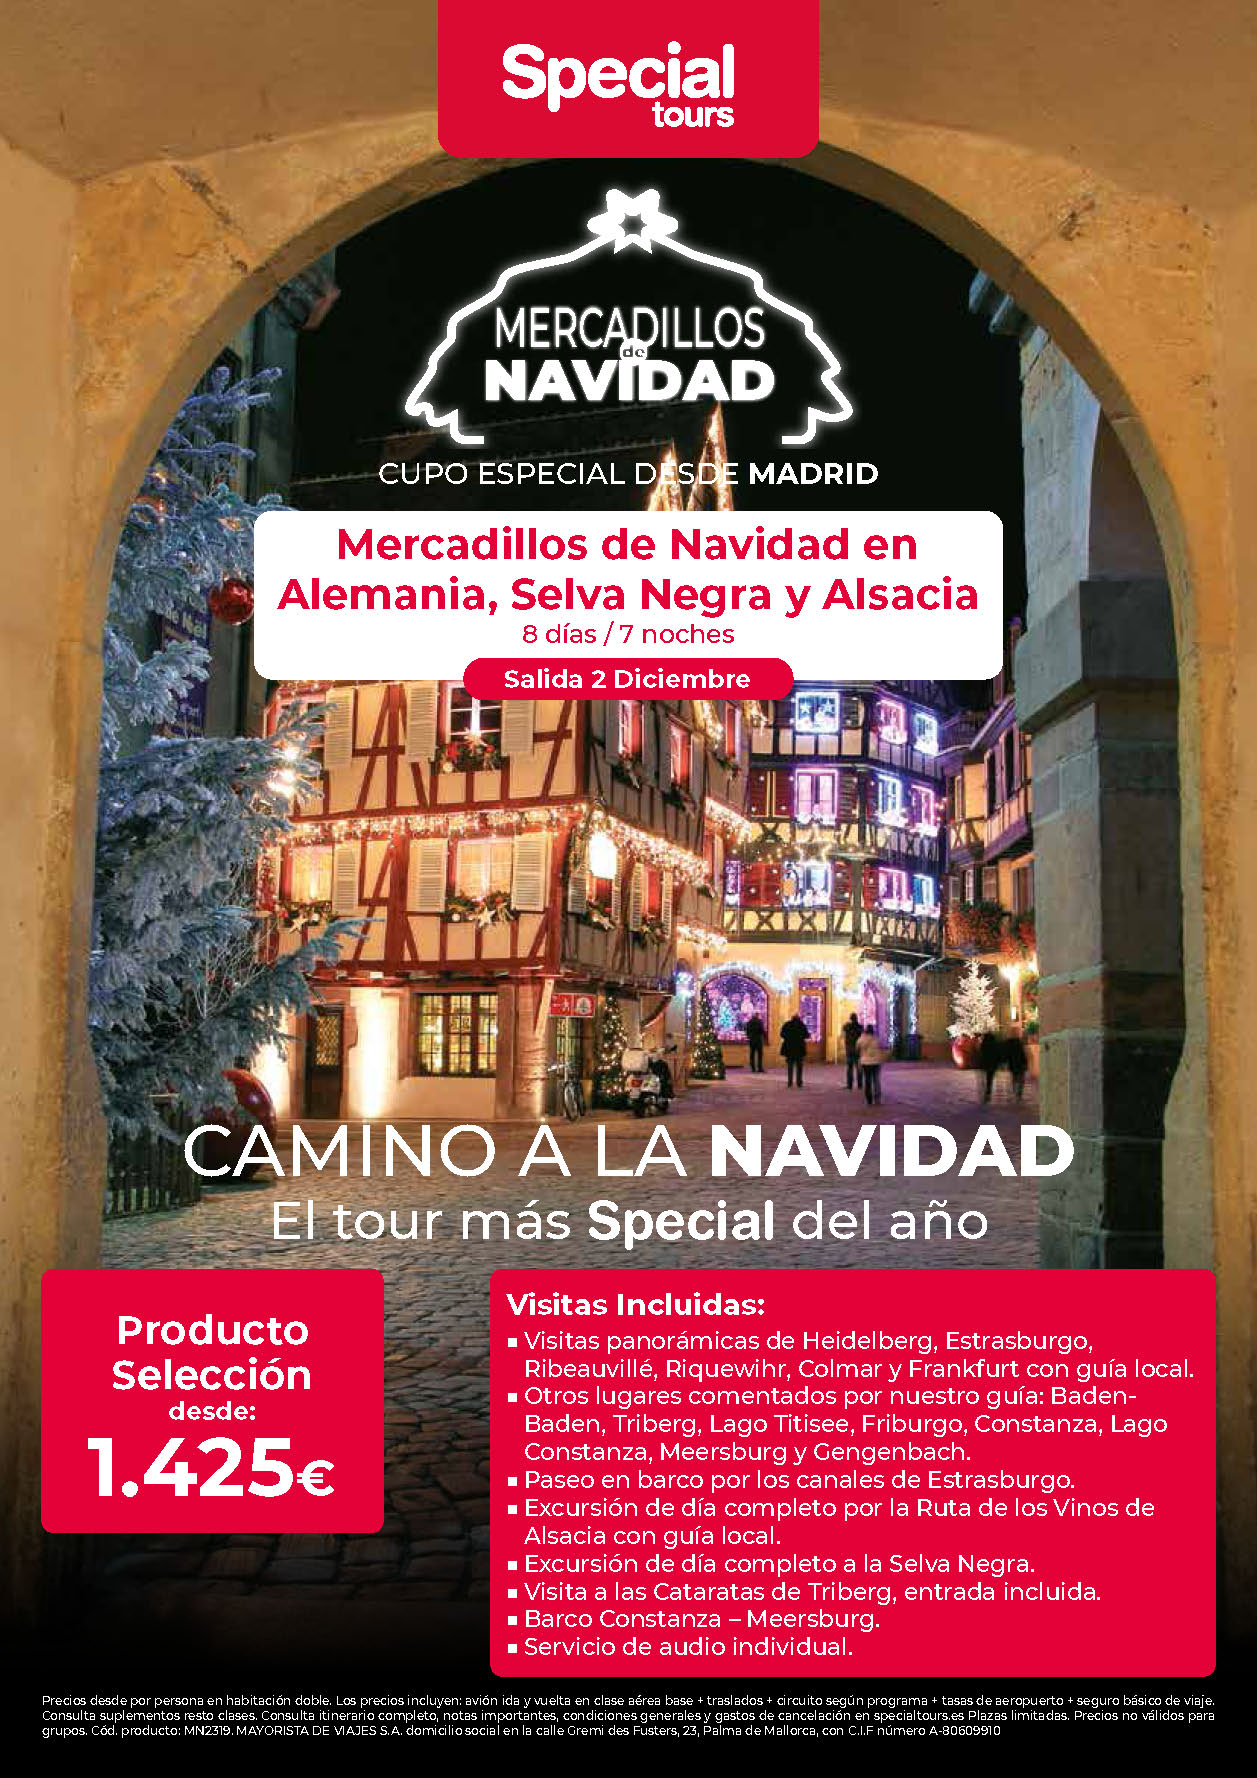 Oferta Special Tours Puente de Diciembre Mercadillos de Navidad en Alemania Selva Negra y Alsacia 8 dias salida 2 Diciembre vuelo directo desde Madrid